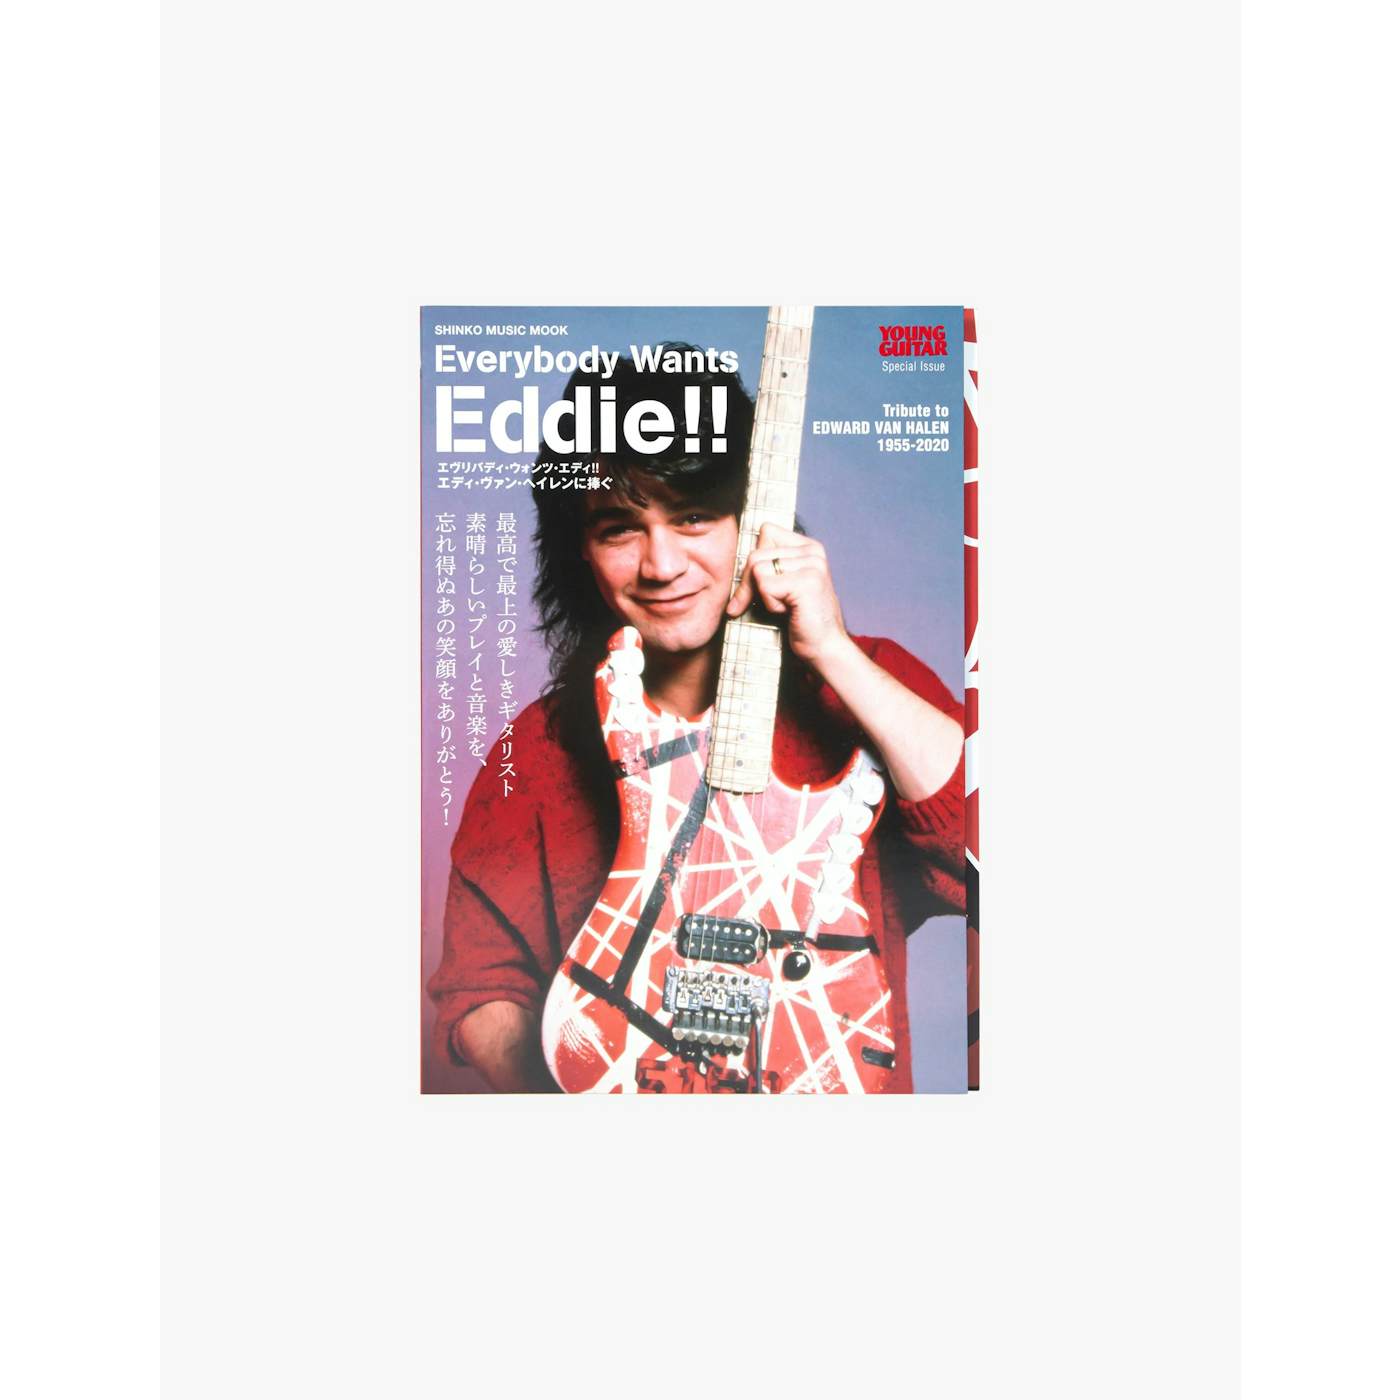 Eddie Van Halen EVH Everybody Wants Eddie Photobook